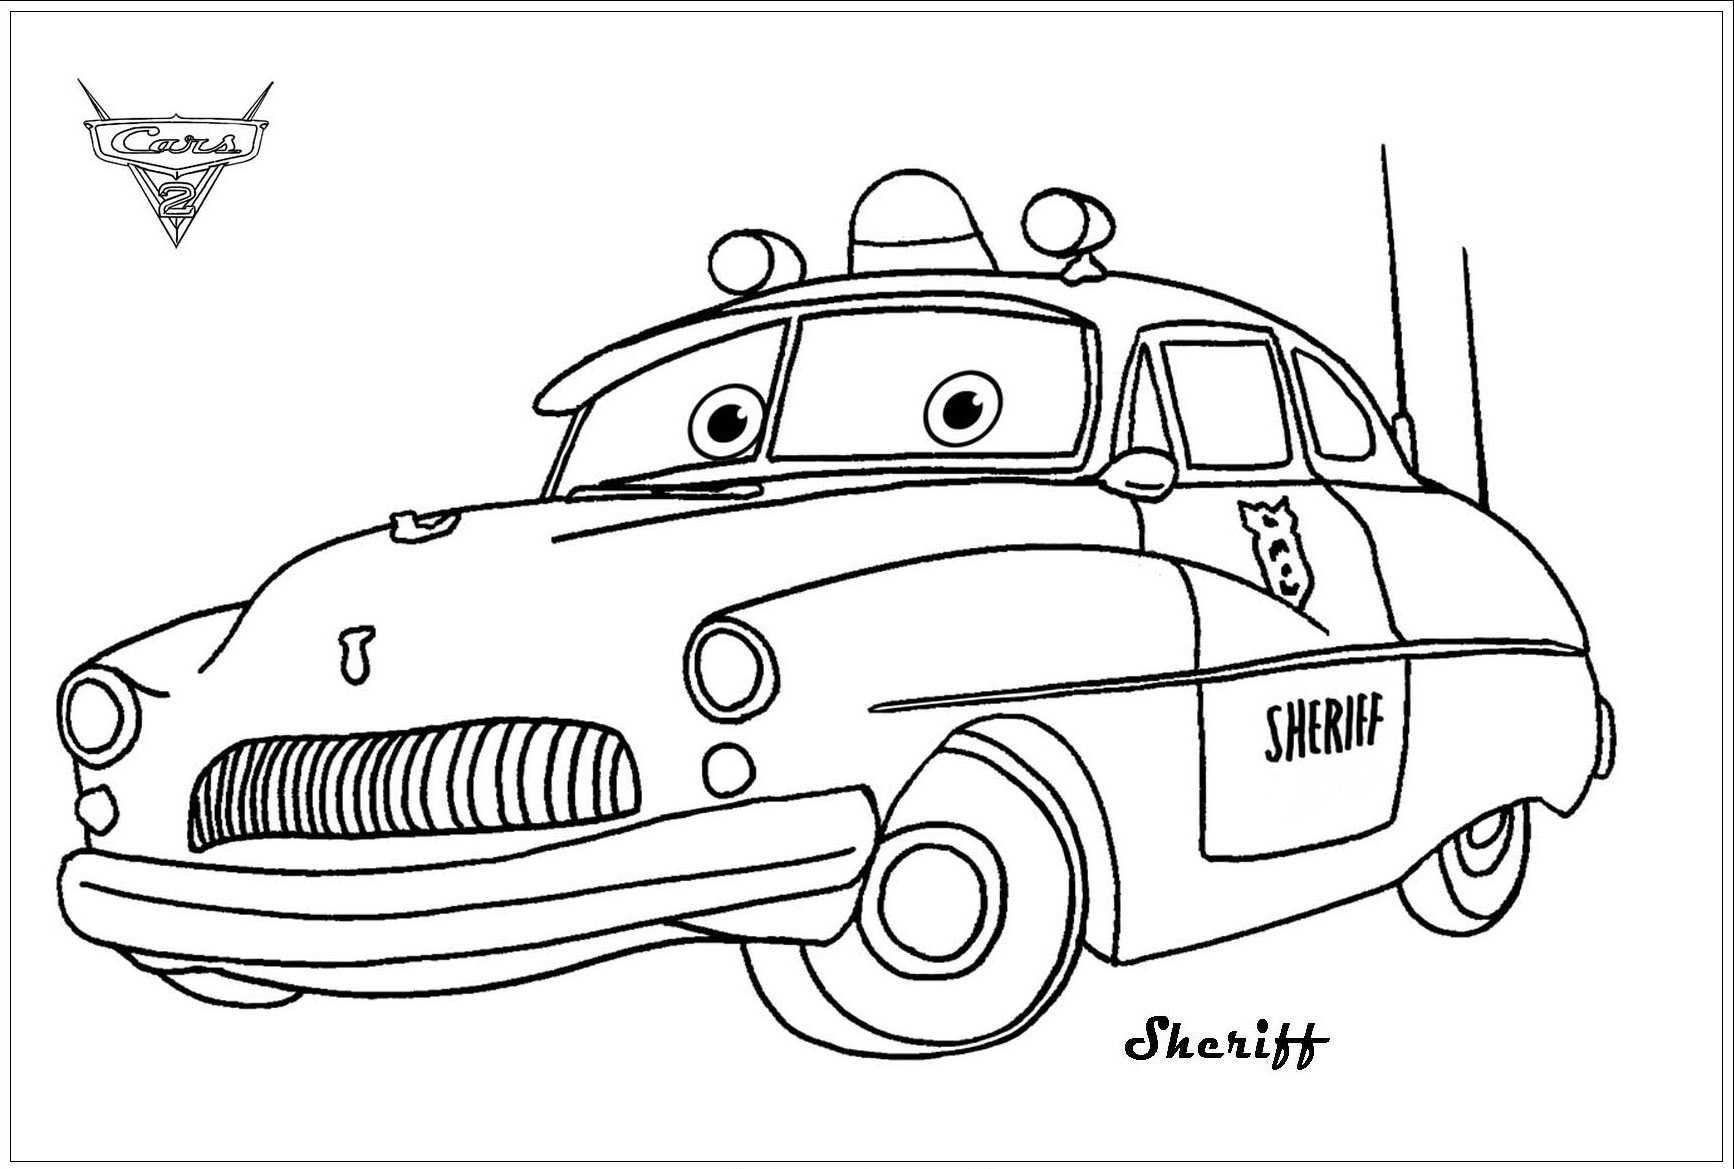 Sheriff, un precioso coche de Cars 2 de Disney/Pixar. Como figura de autoridad en Radiator Springs, el sheriff detiene a Flash por exceso de velocidad tras una persecución en coche.